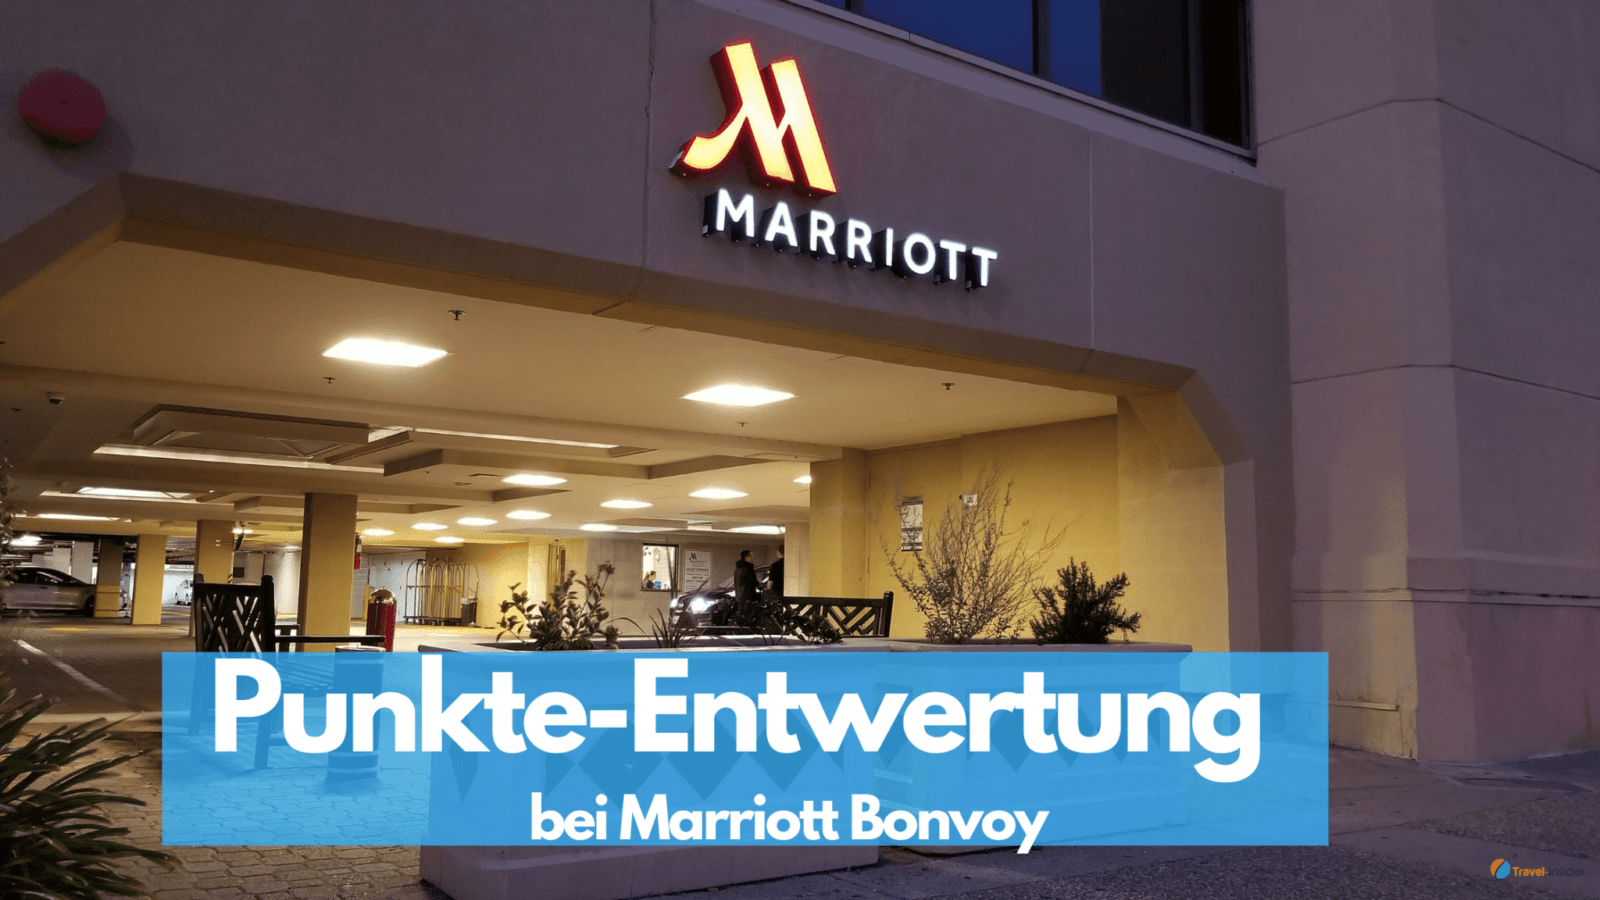 Punkte-Entwertung bei Marriott Bonvoy